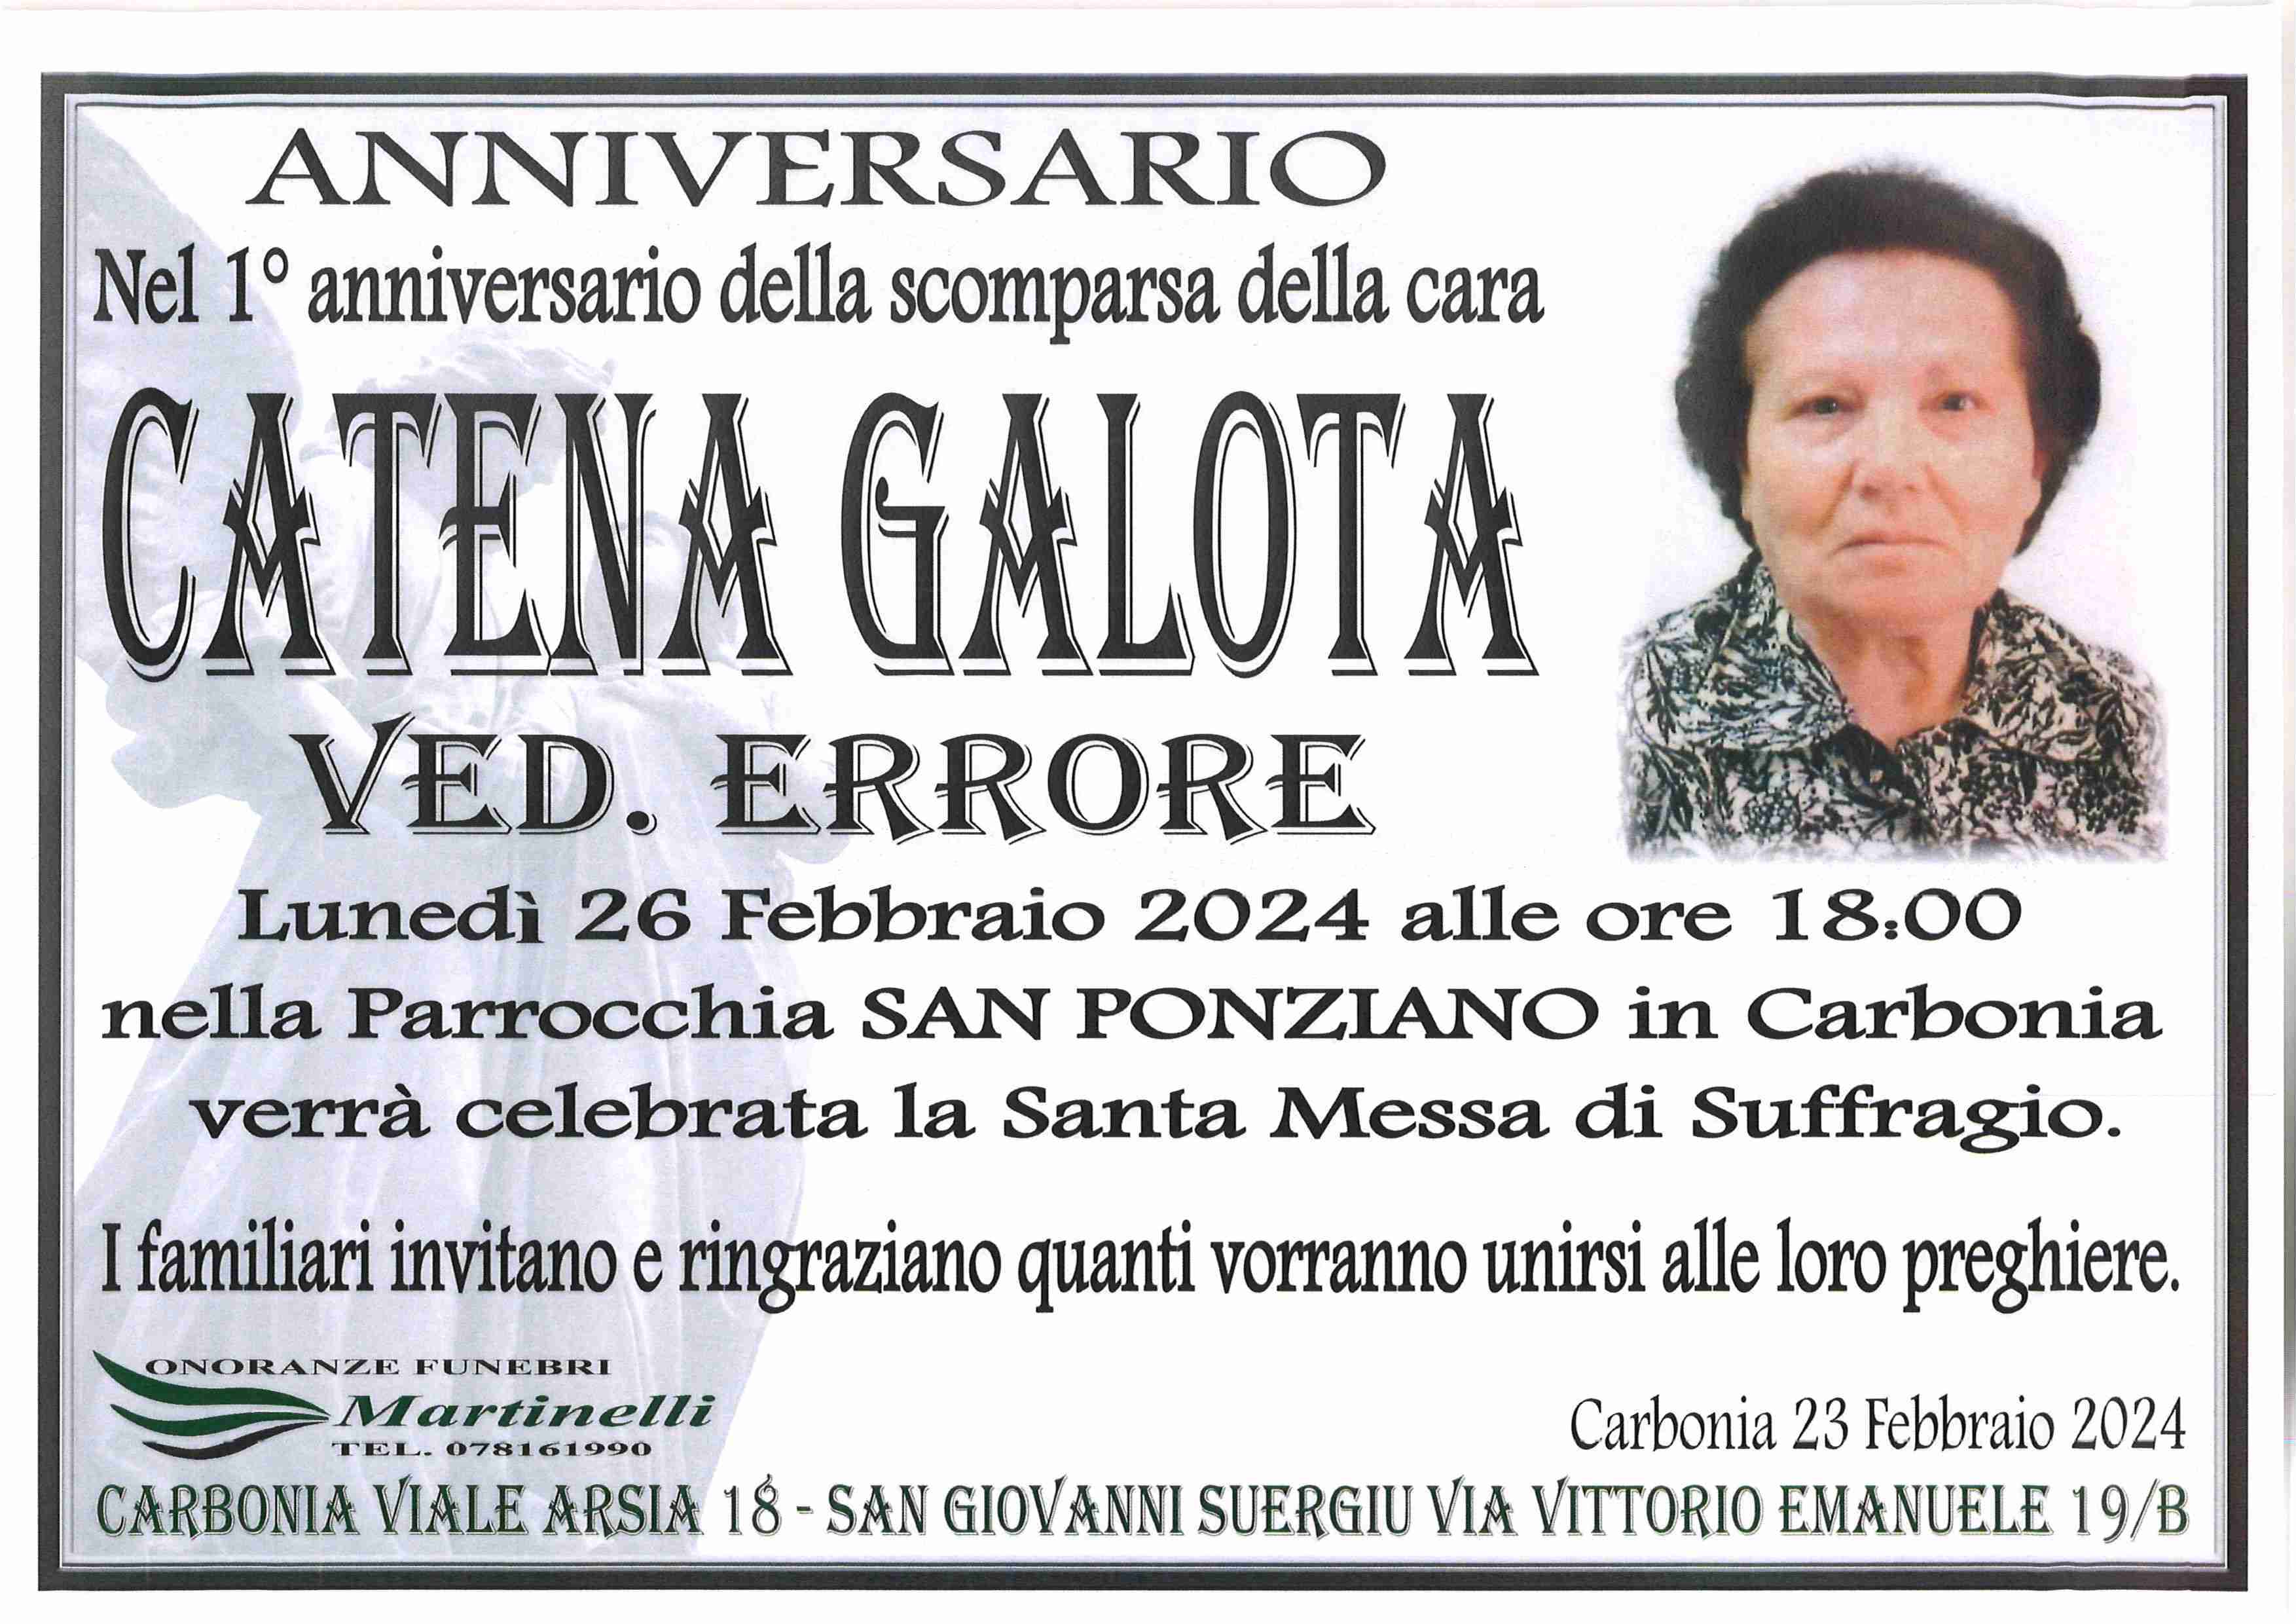 Catena Galota